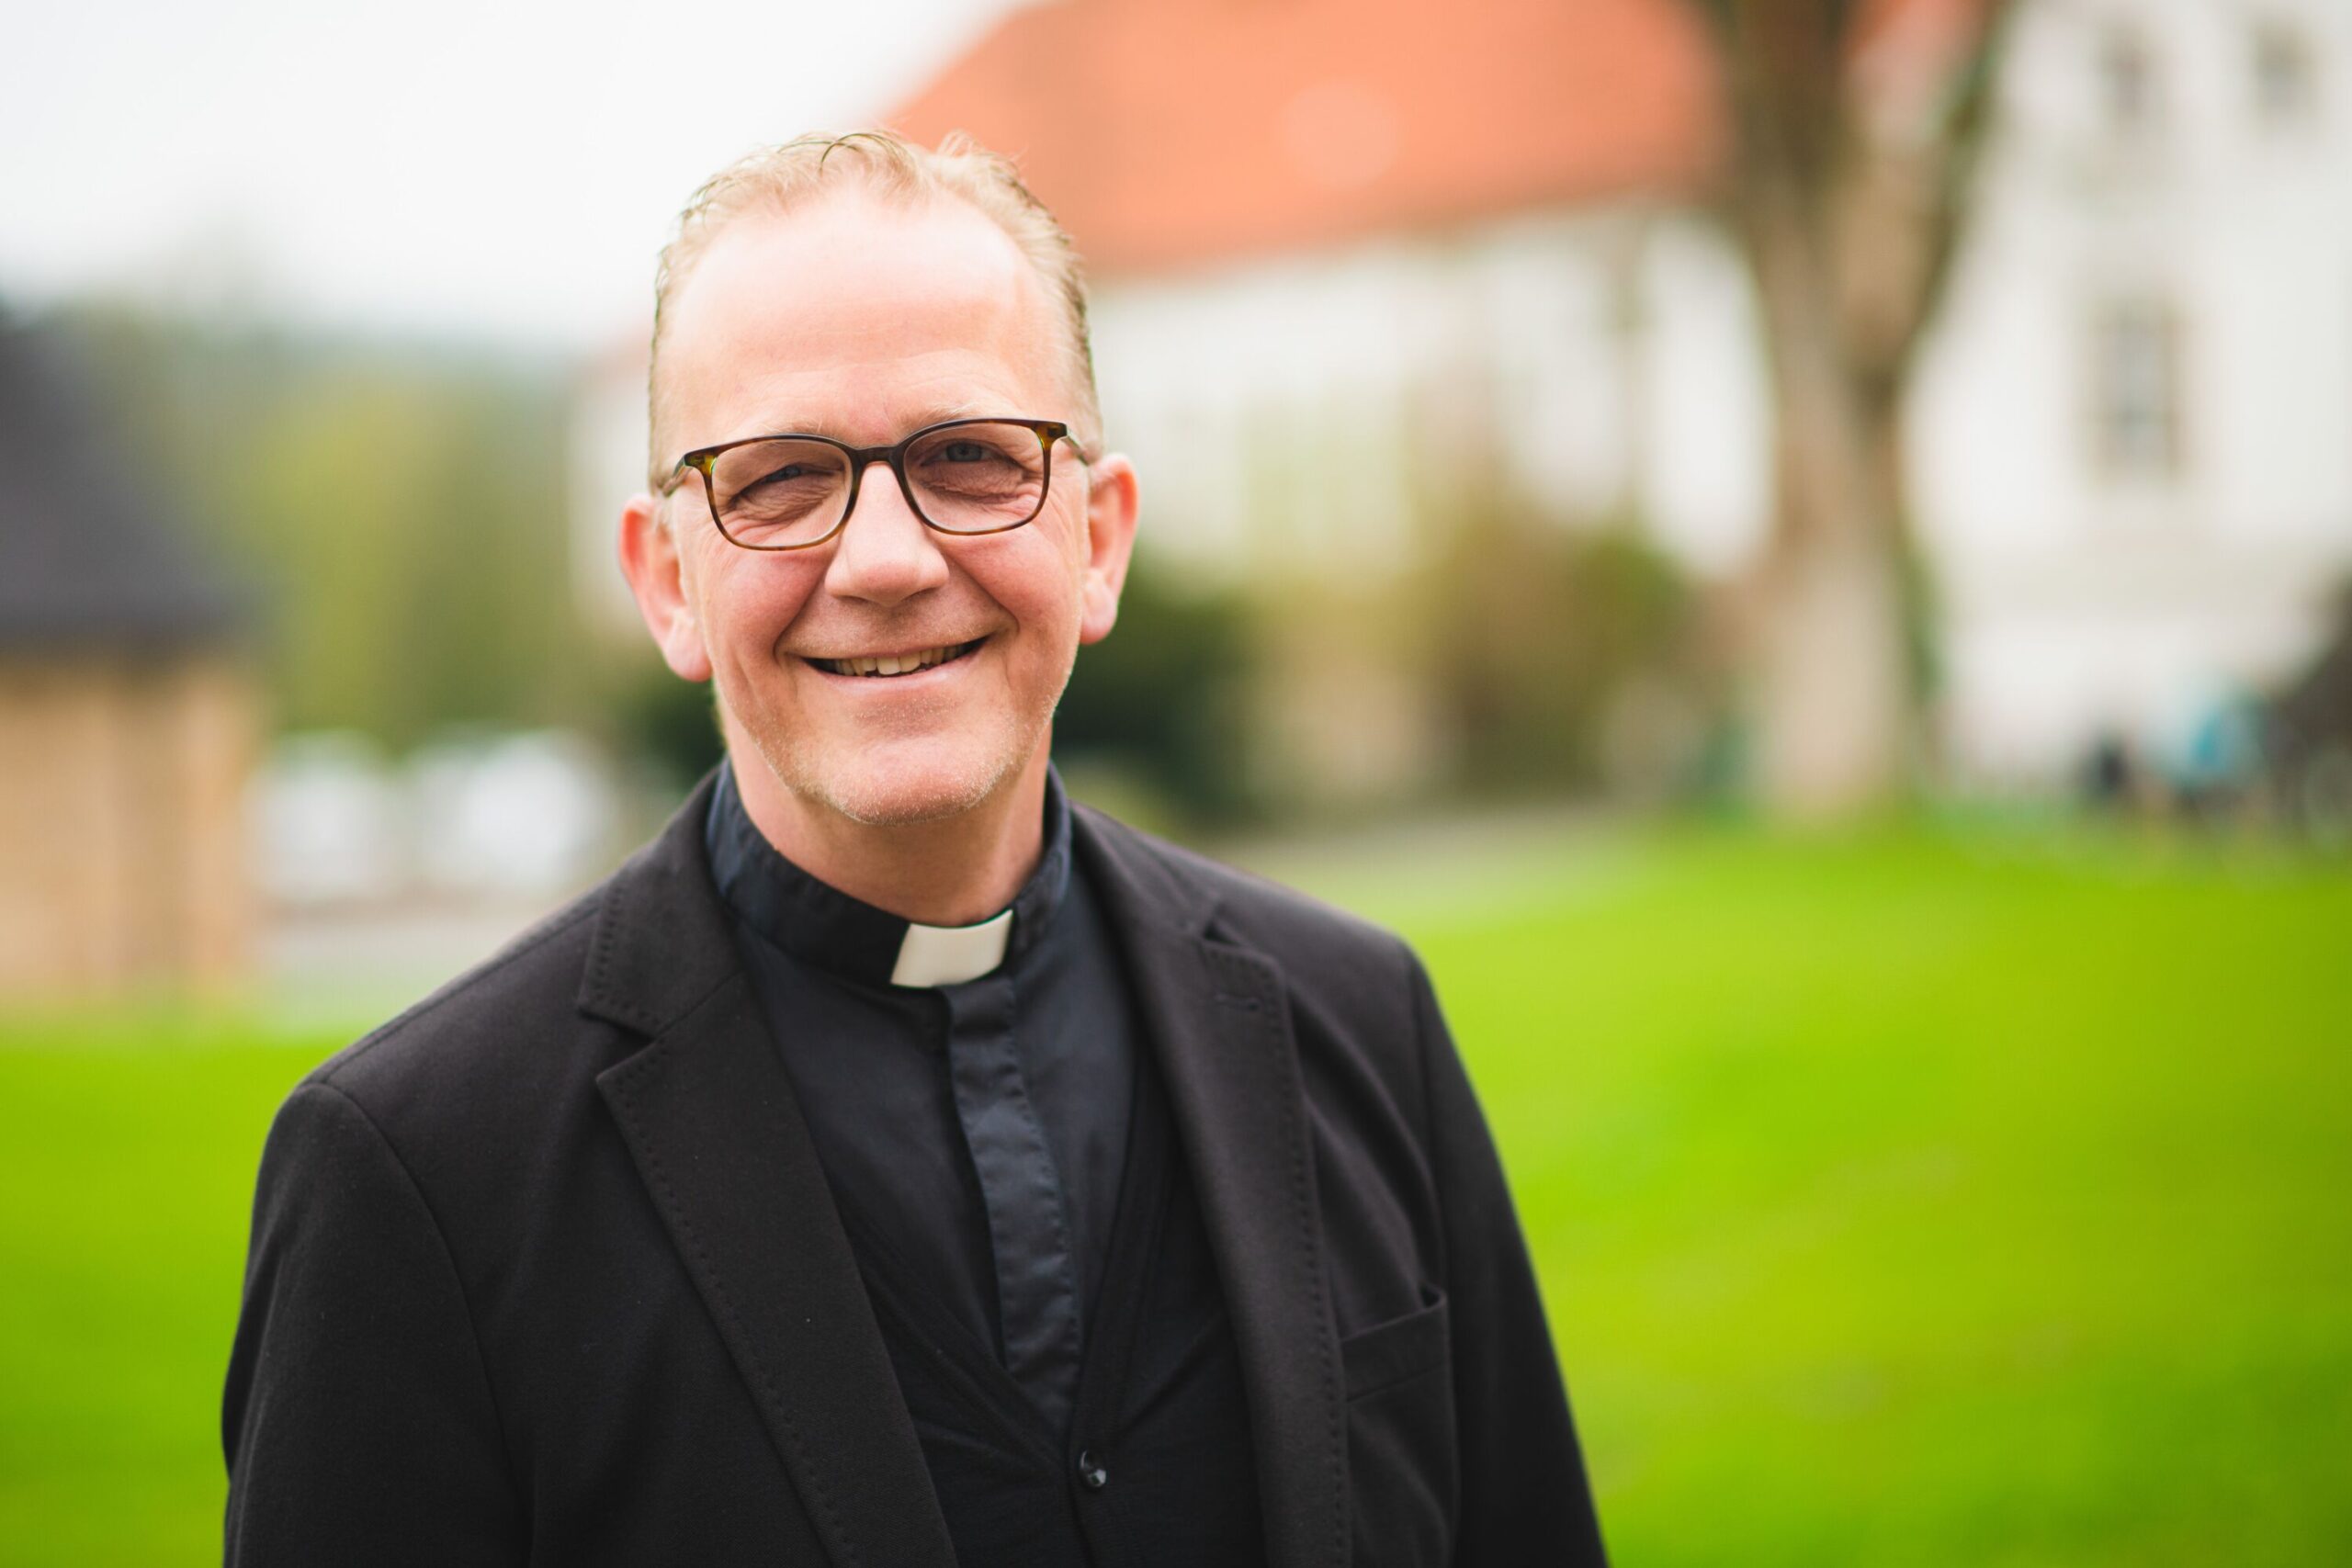 Porträt Dr. Peter Jochem, Geistlicher Rektor der Bildungseinrichtung Hardehausen, spricht über das Erntedankfest